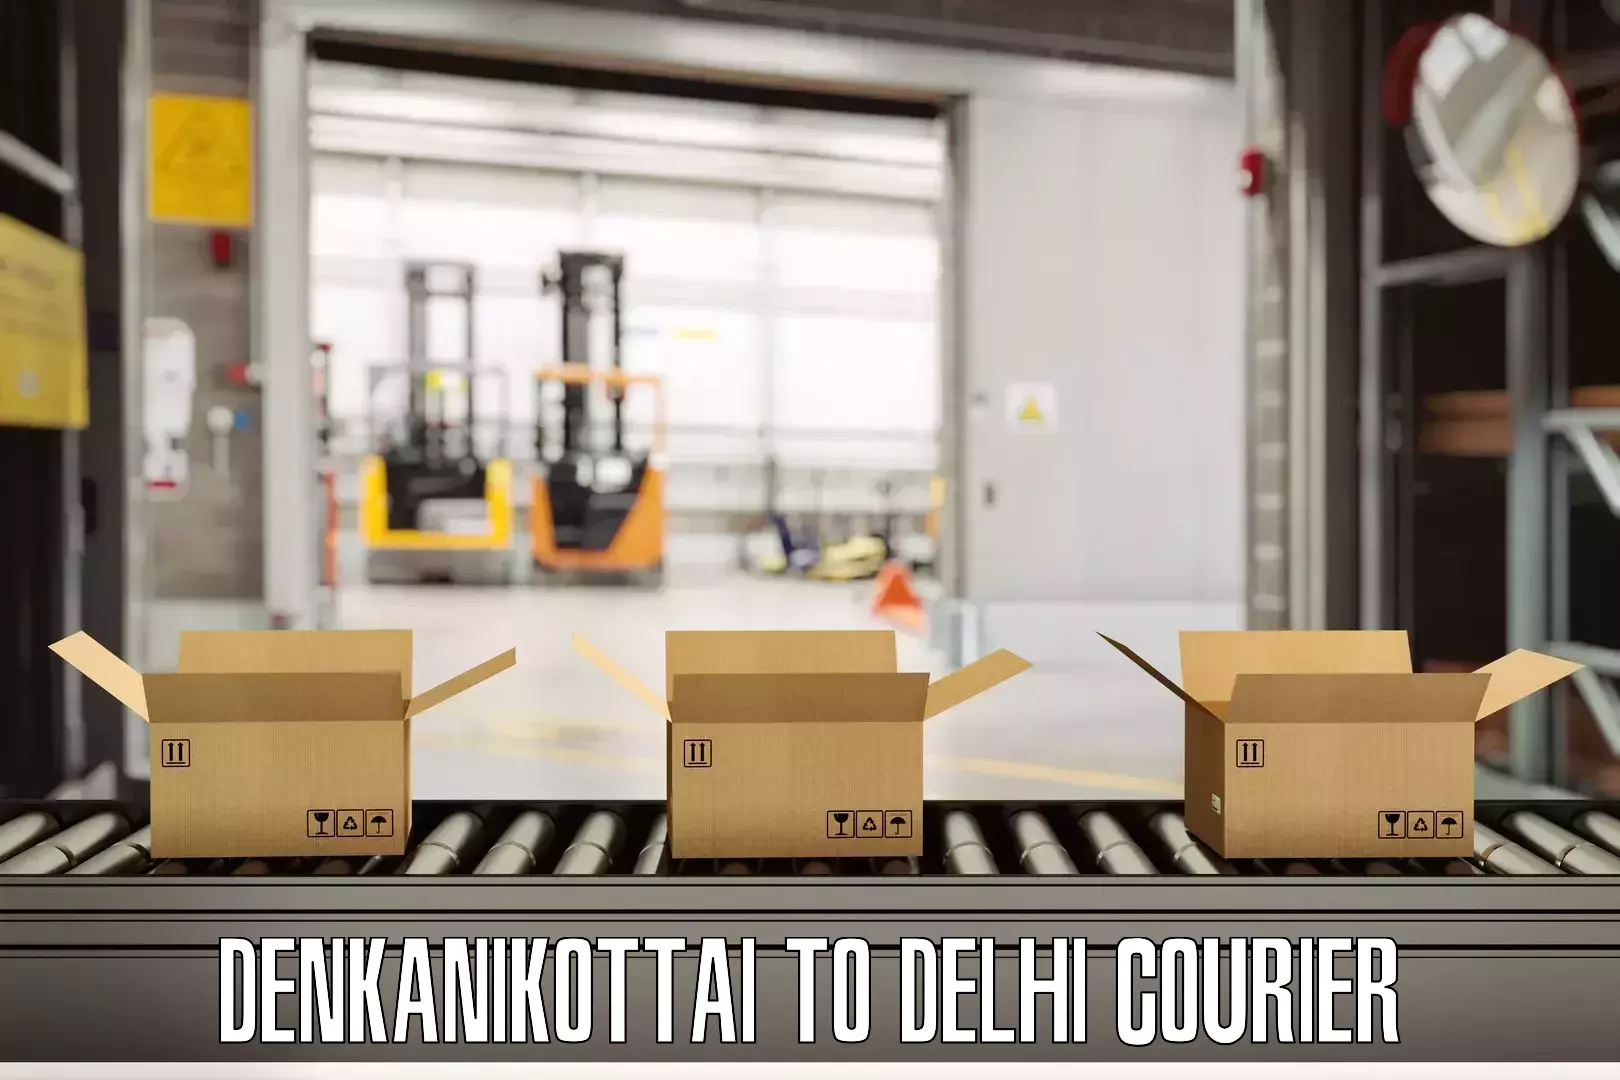 Luggage delivery network Denkanikottai to NCR